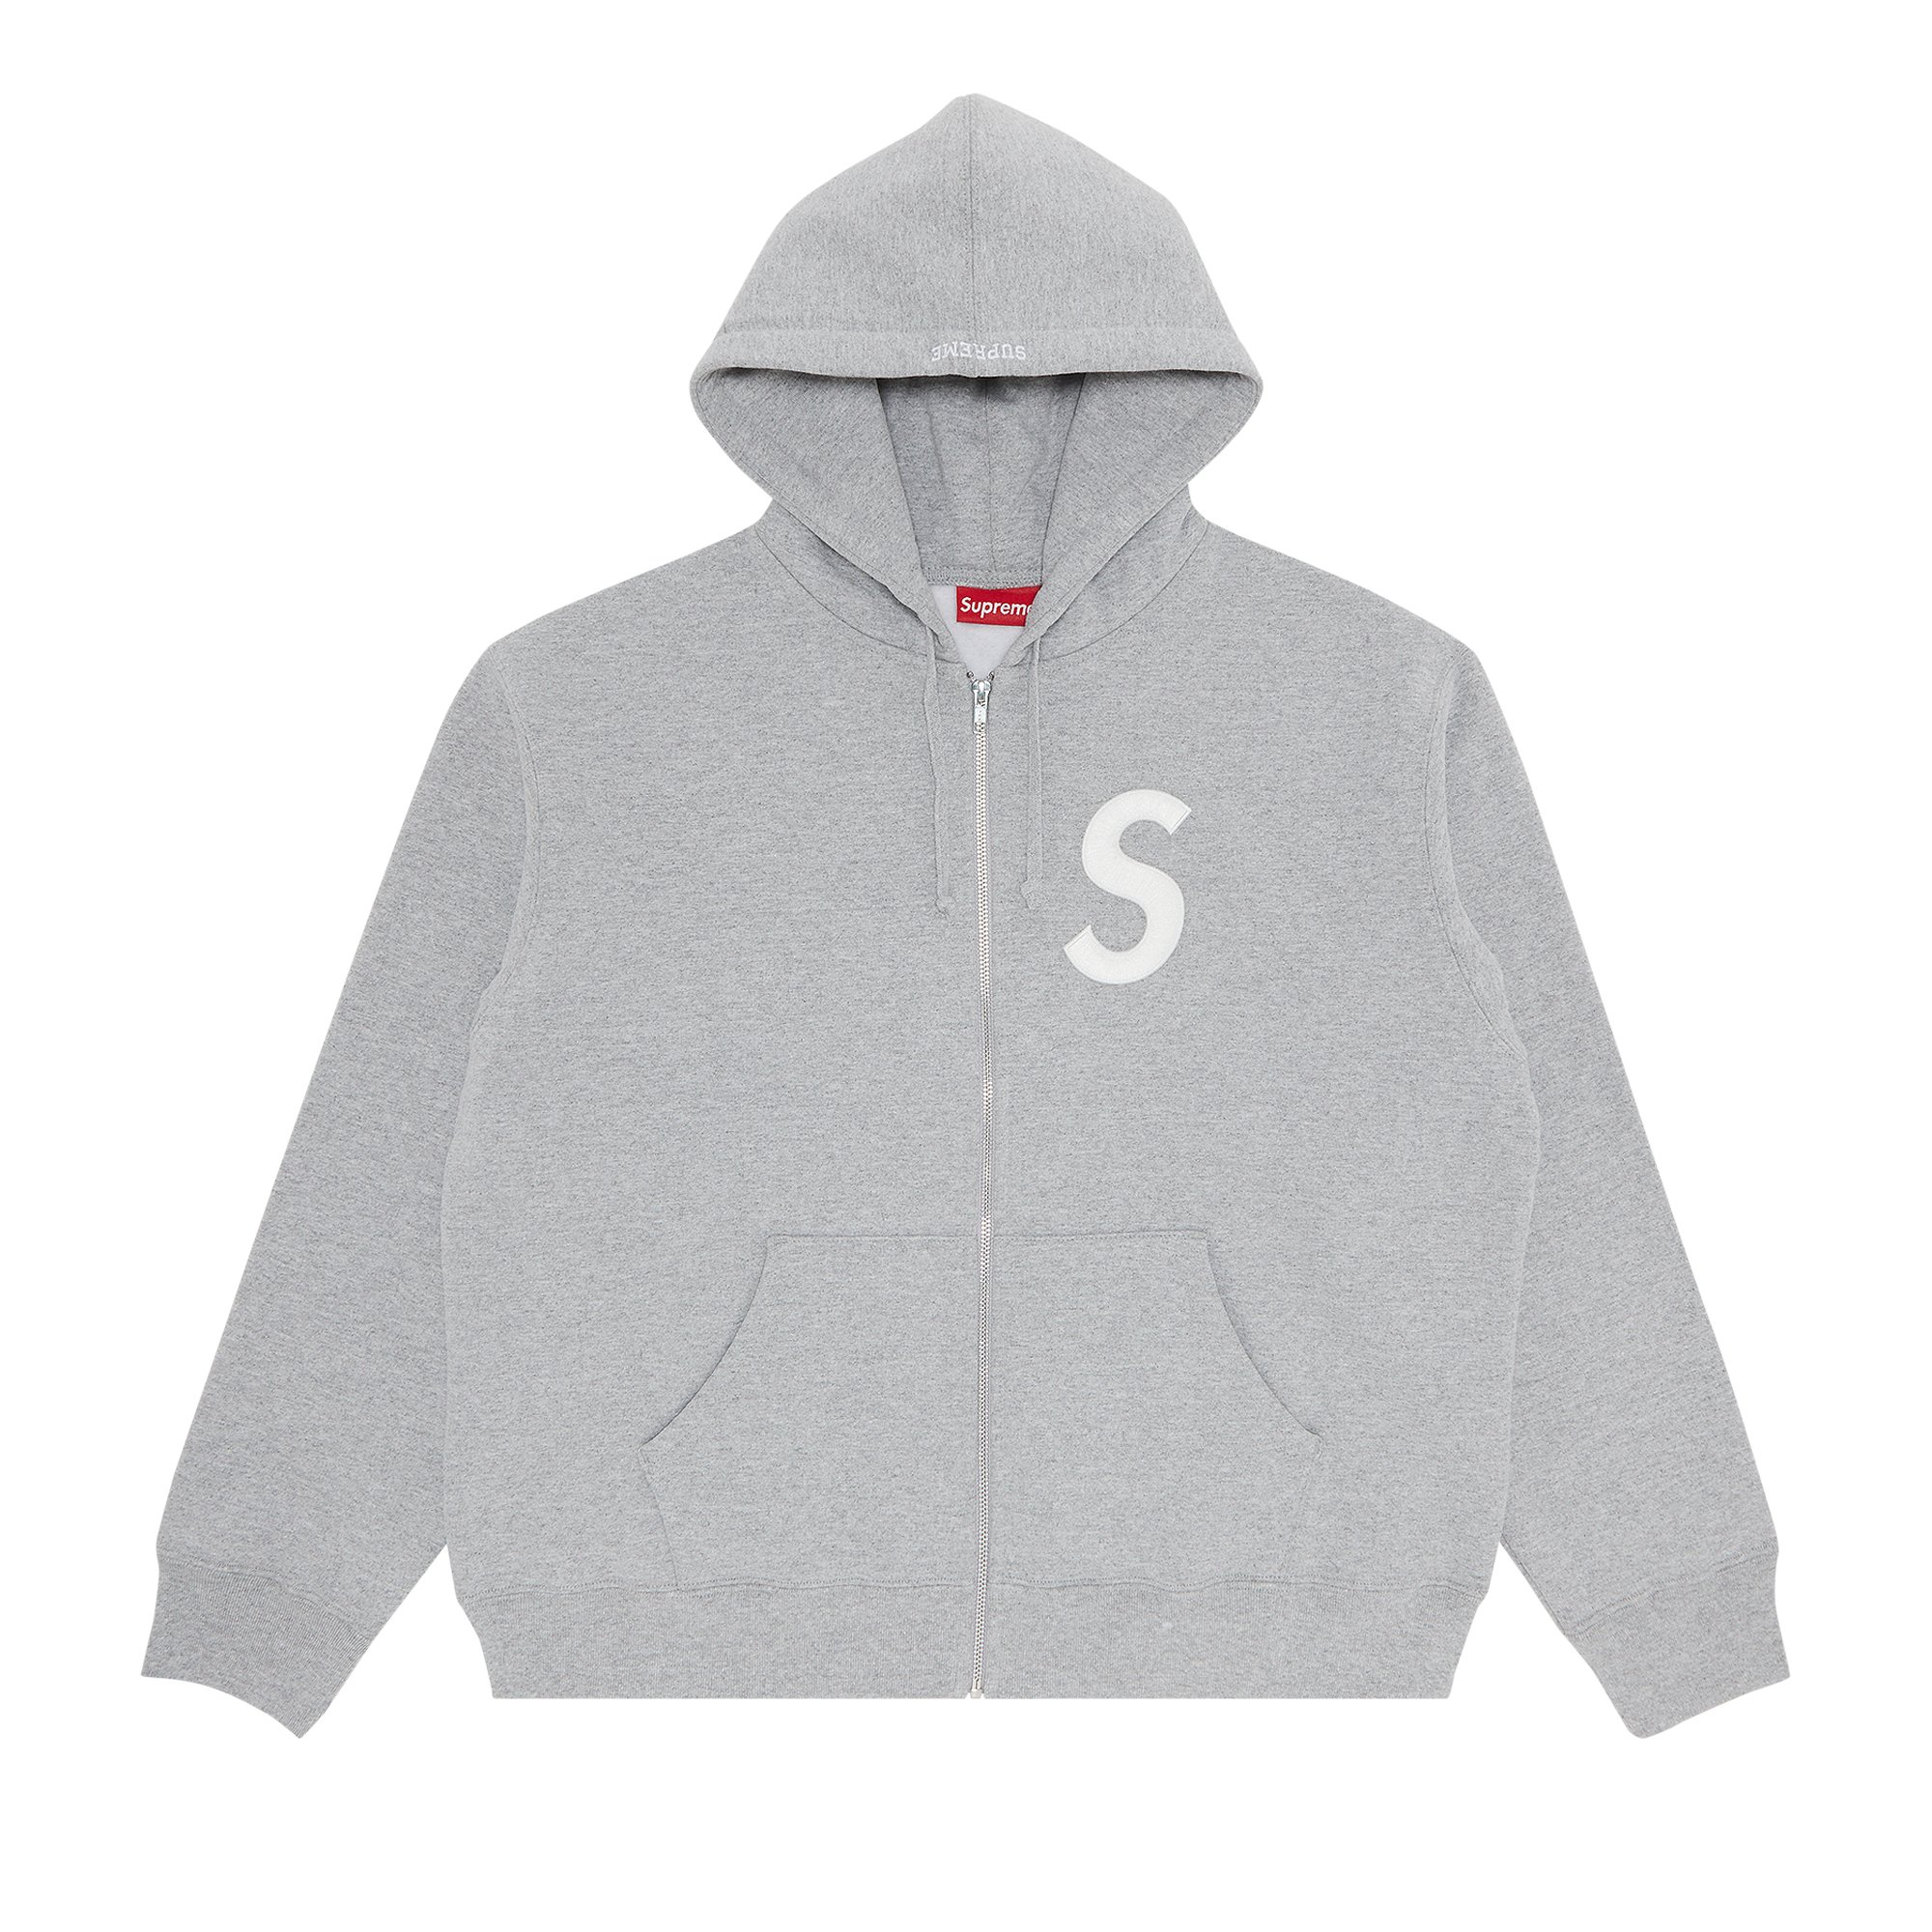 Buy Supreme S Logo Zip Up Hooded Sweatshirt 'Heather Grey